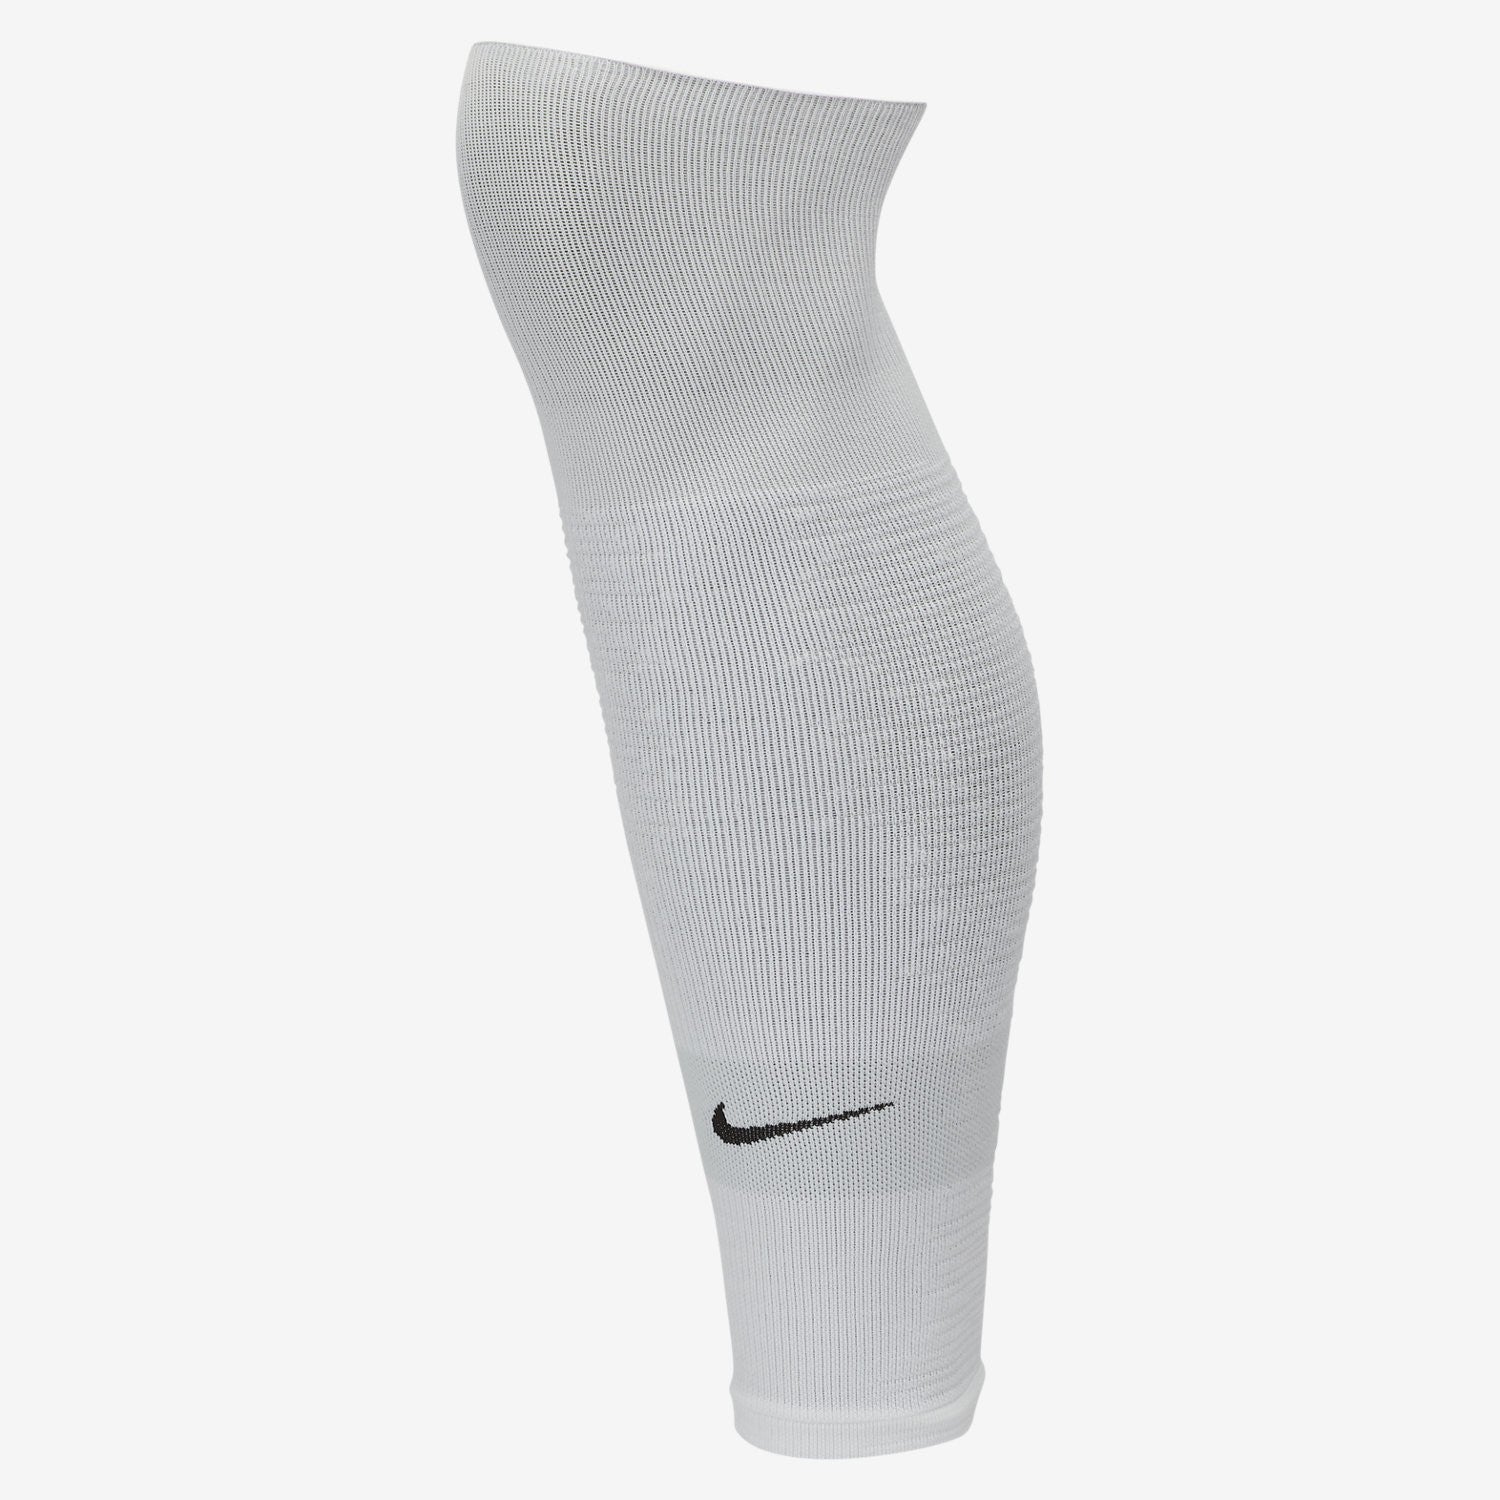 nike soccer sleeve socks